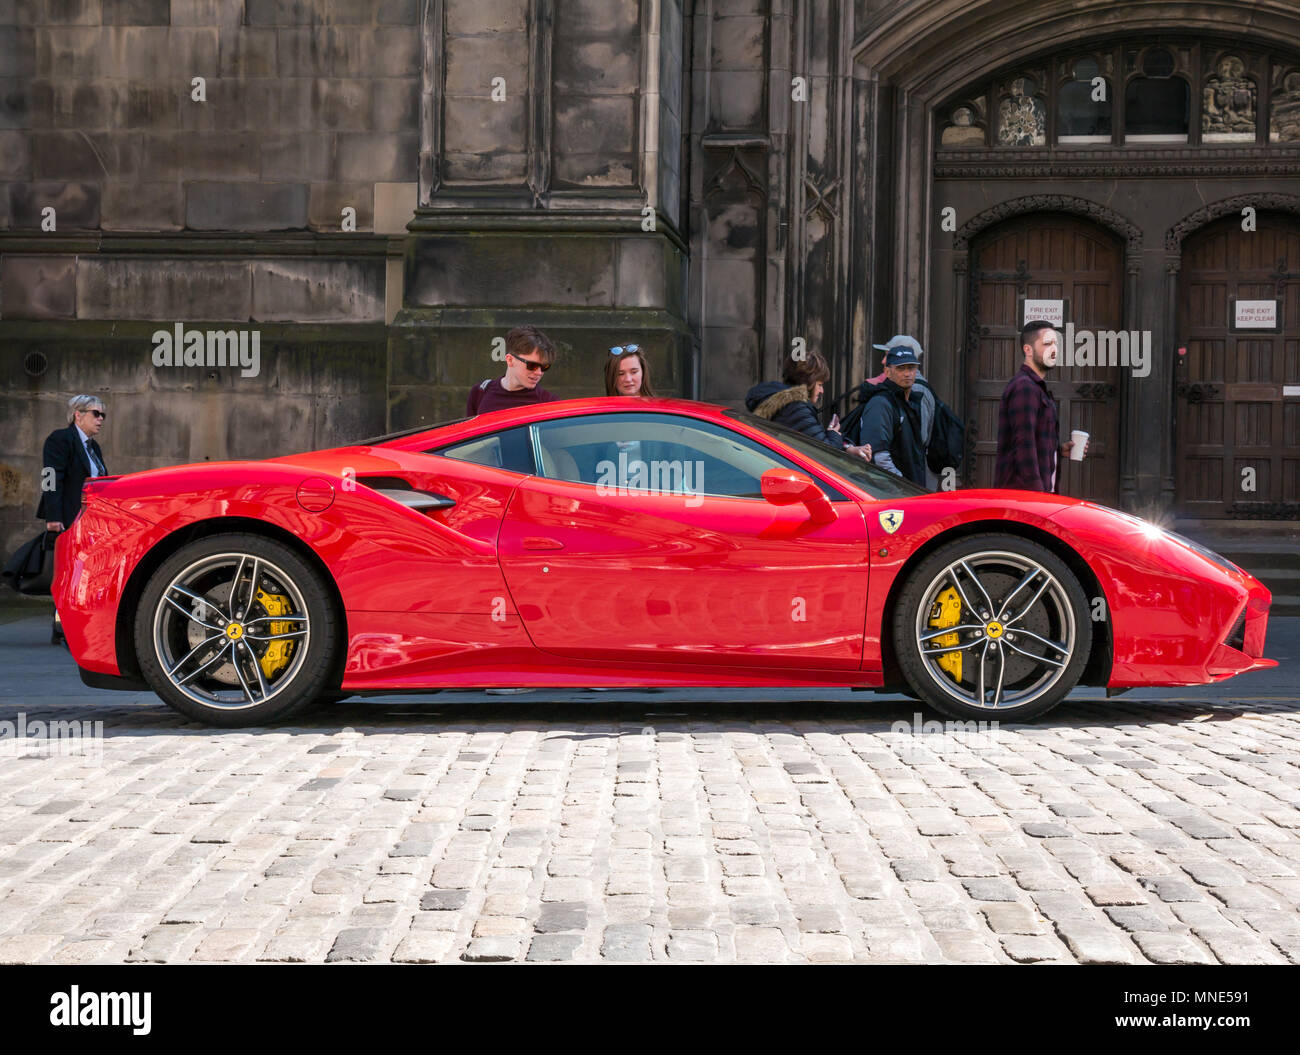 Royal Mile, Edinburgh, Schottland, Vereinigtes Königreich, Mai 2018. Leute, die von einem hellen roten Ferrari 488 GTB coupé Sportwagen auf einer doppelten gelben Linie auf dem gepflasterten Royal Mile geparkt neben der St. Giles Cathedral, die neidvolle Blicke Stockfoto